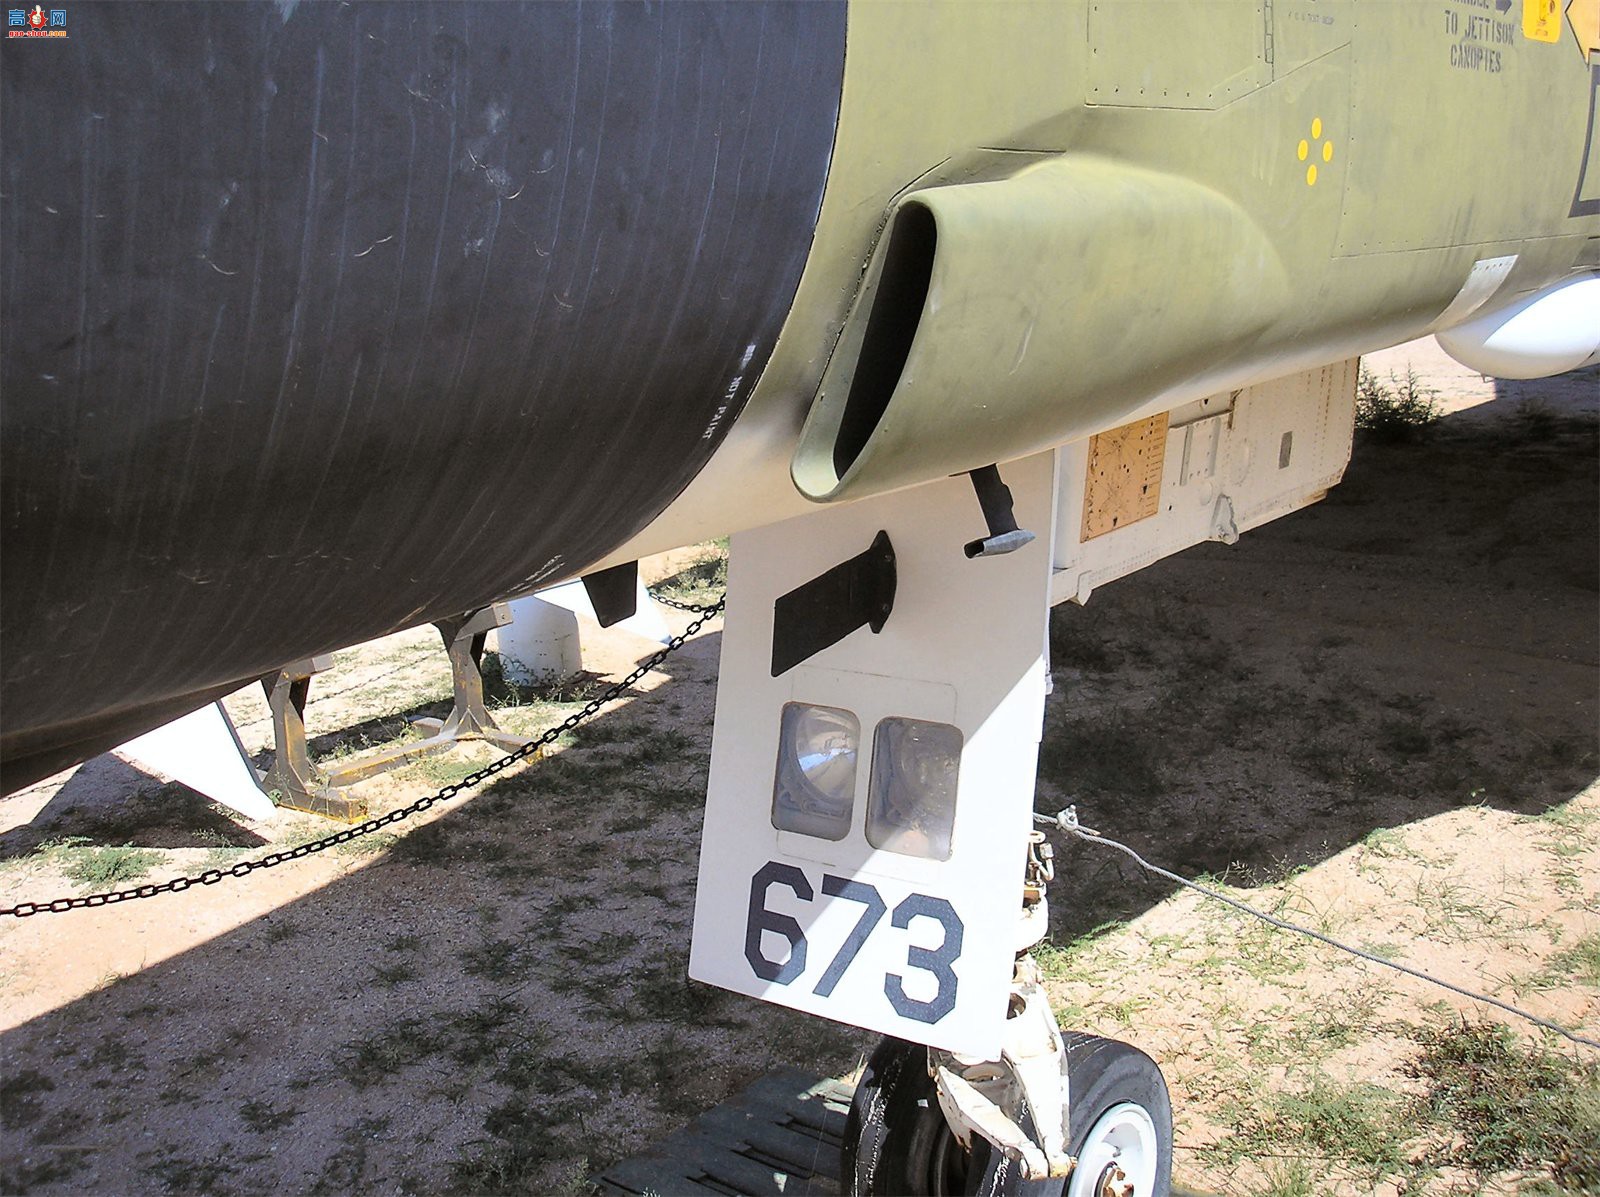  F-4C (64-0673) ӰII/II ս